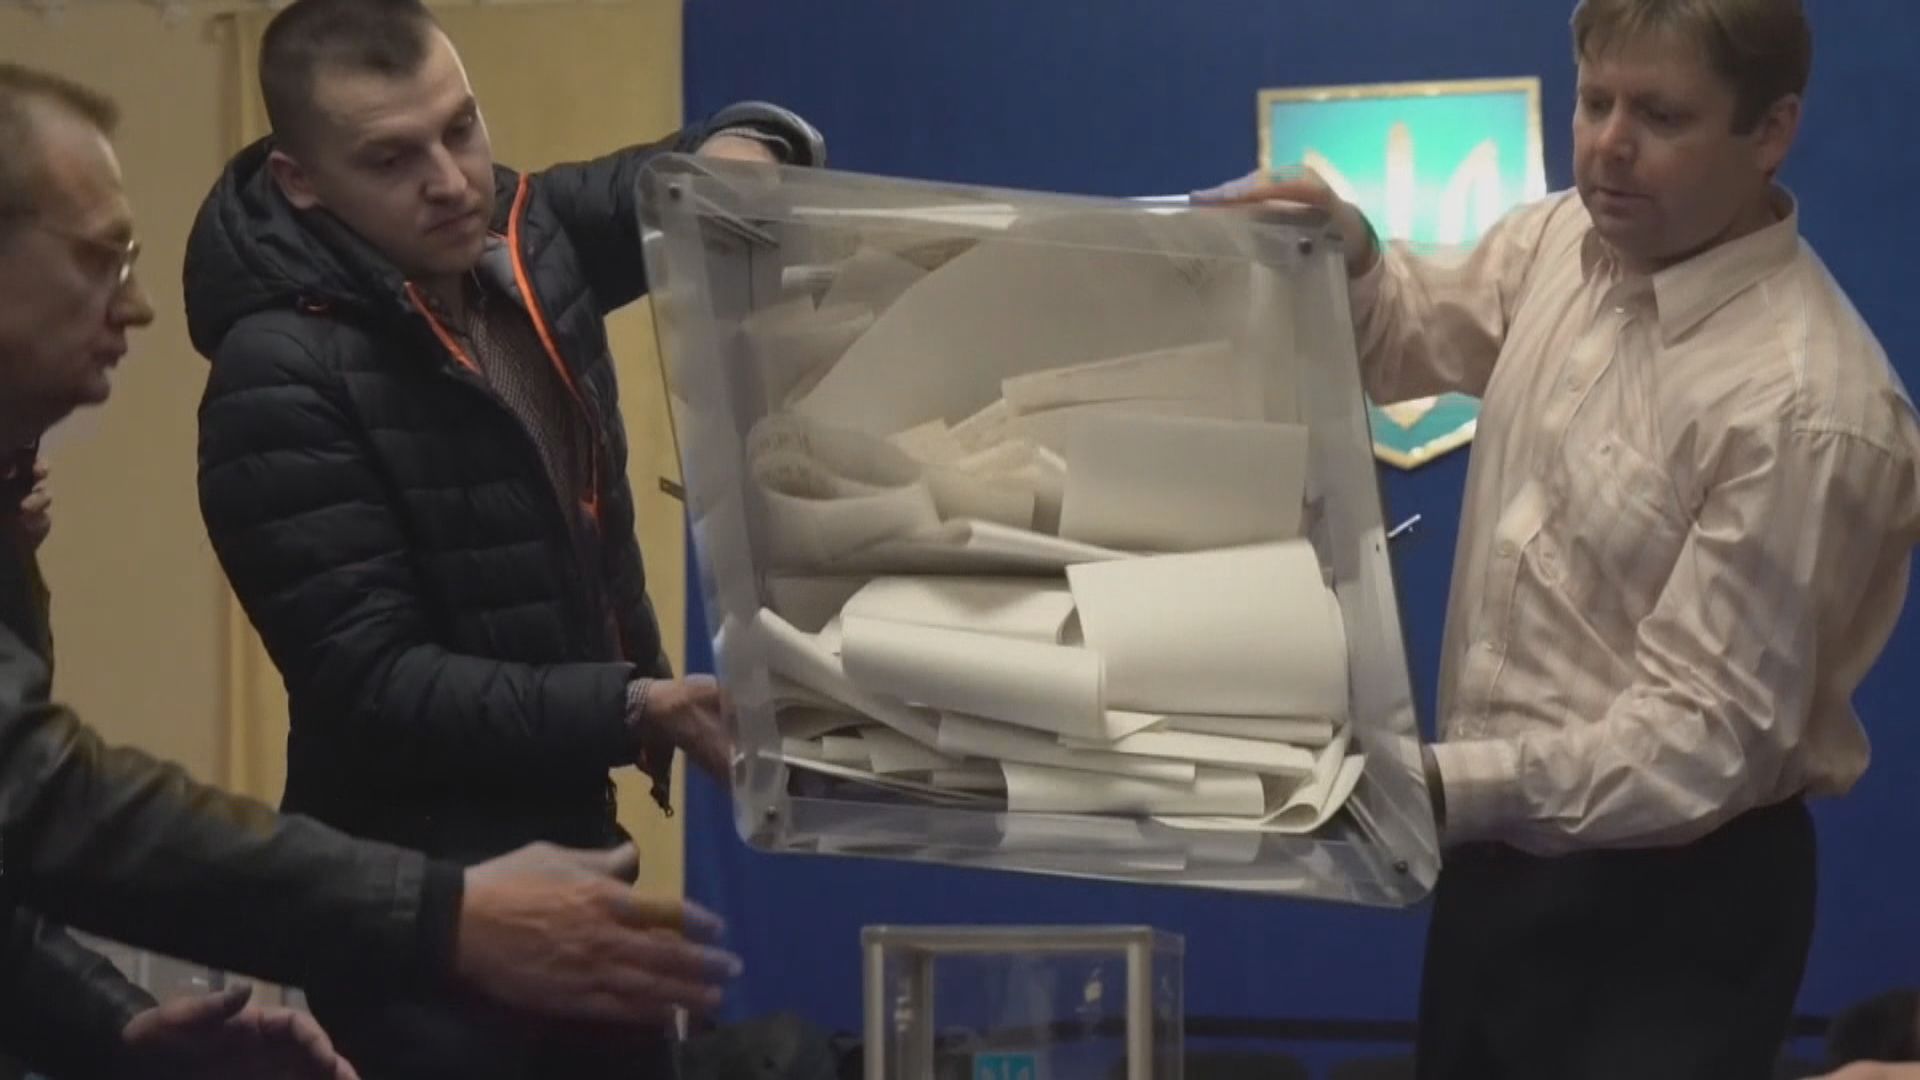 烏克蘭總統選舉喜劇演員澤連斯基領先